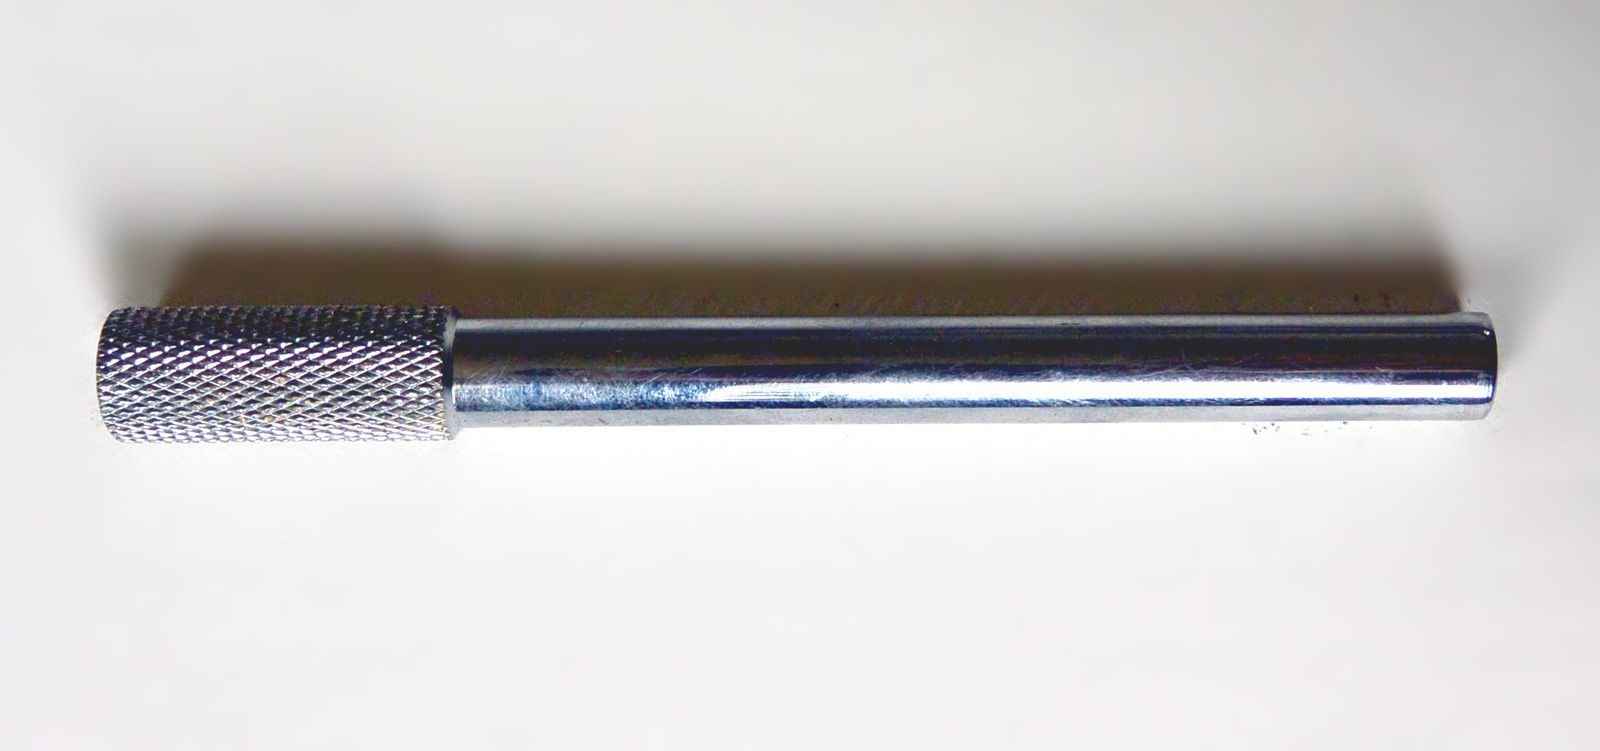 Pièces détachées pour robinet mitigeur douchette type Rousseau© Fribourg